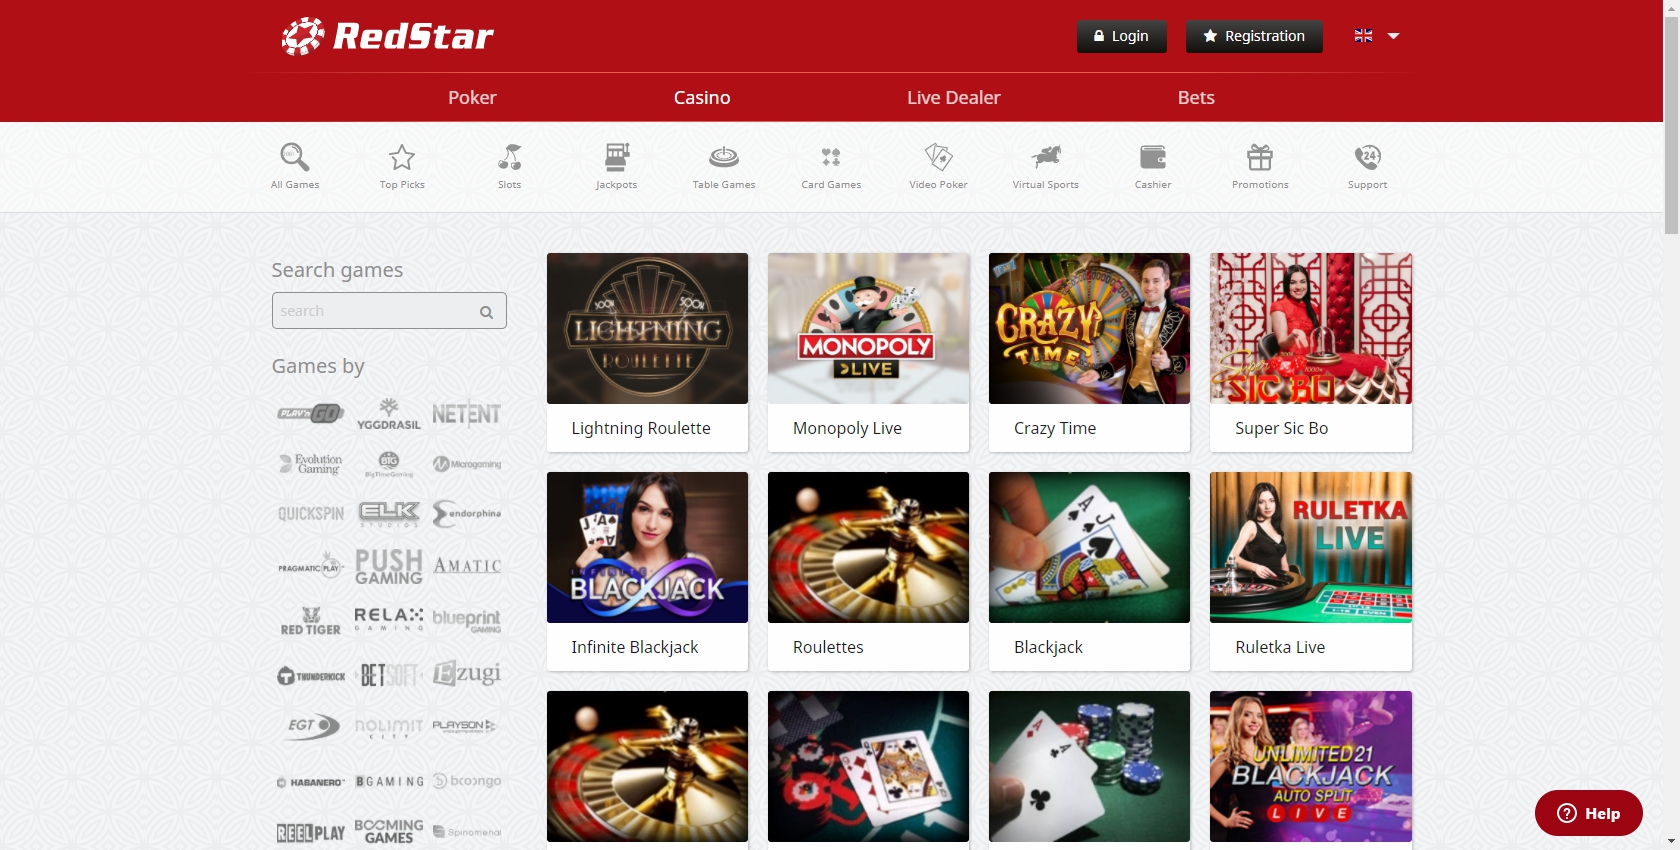 Red Star Poker Casino Live Dealer Games